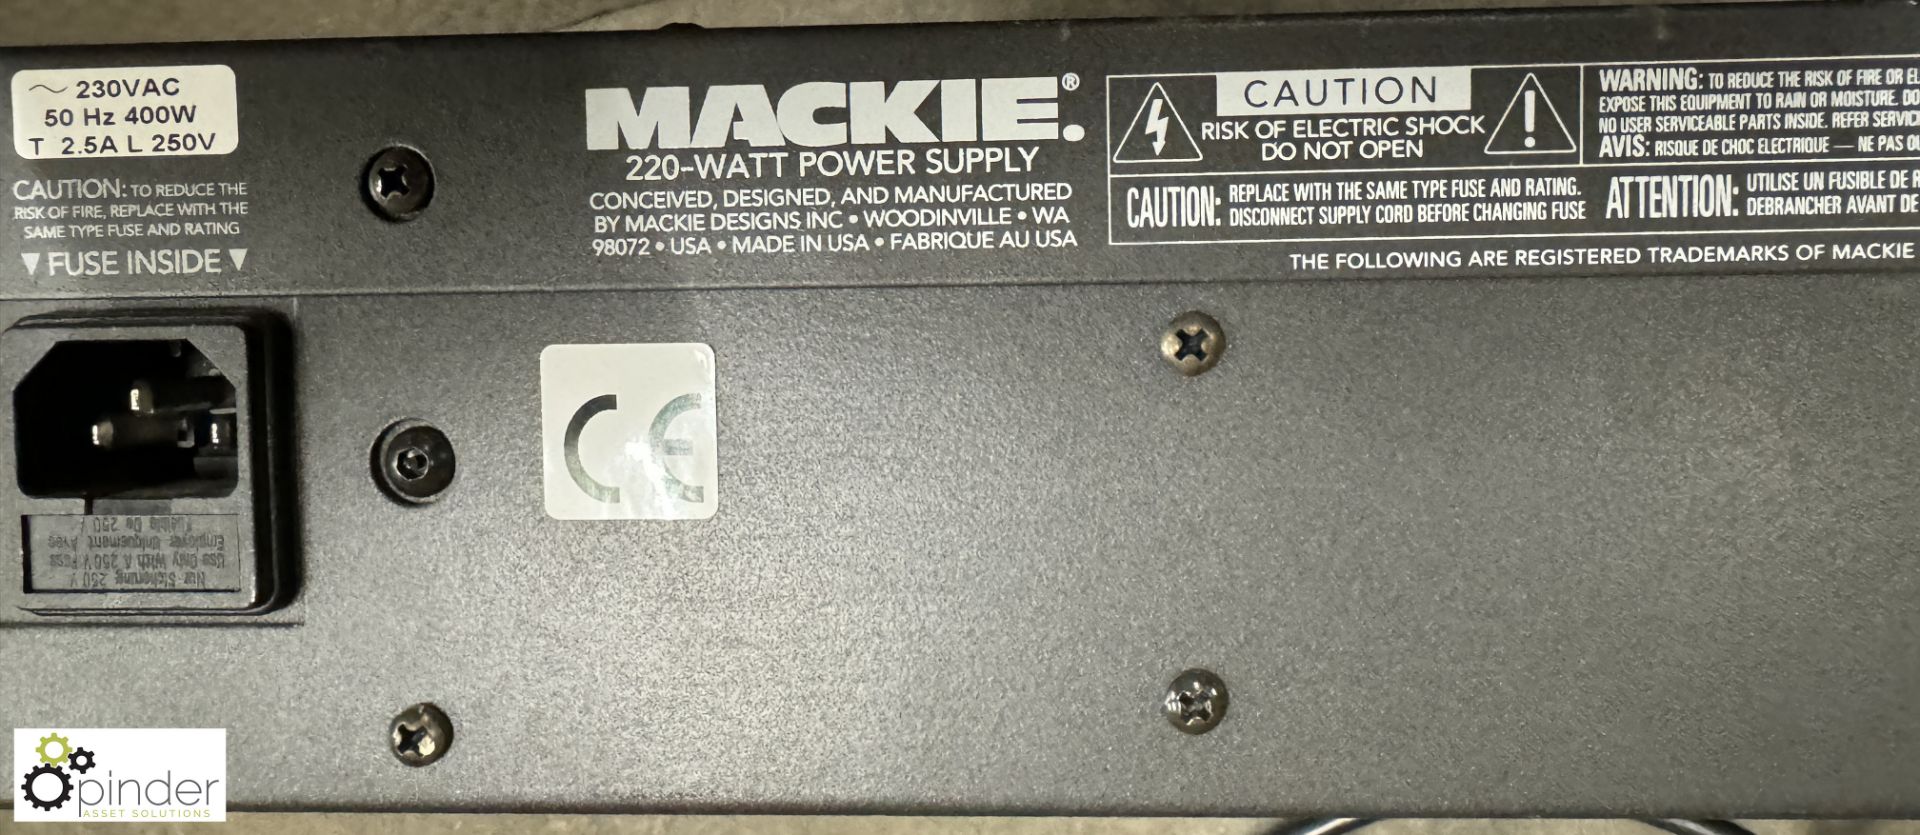 Mackie 220watt Power Supply - Image 2 of 3